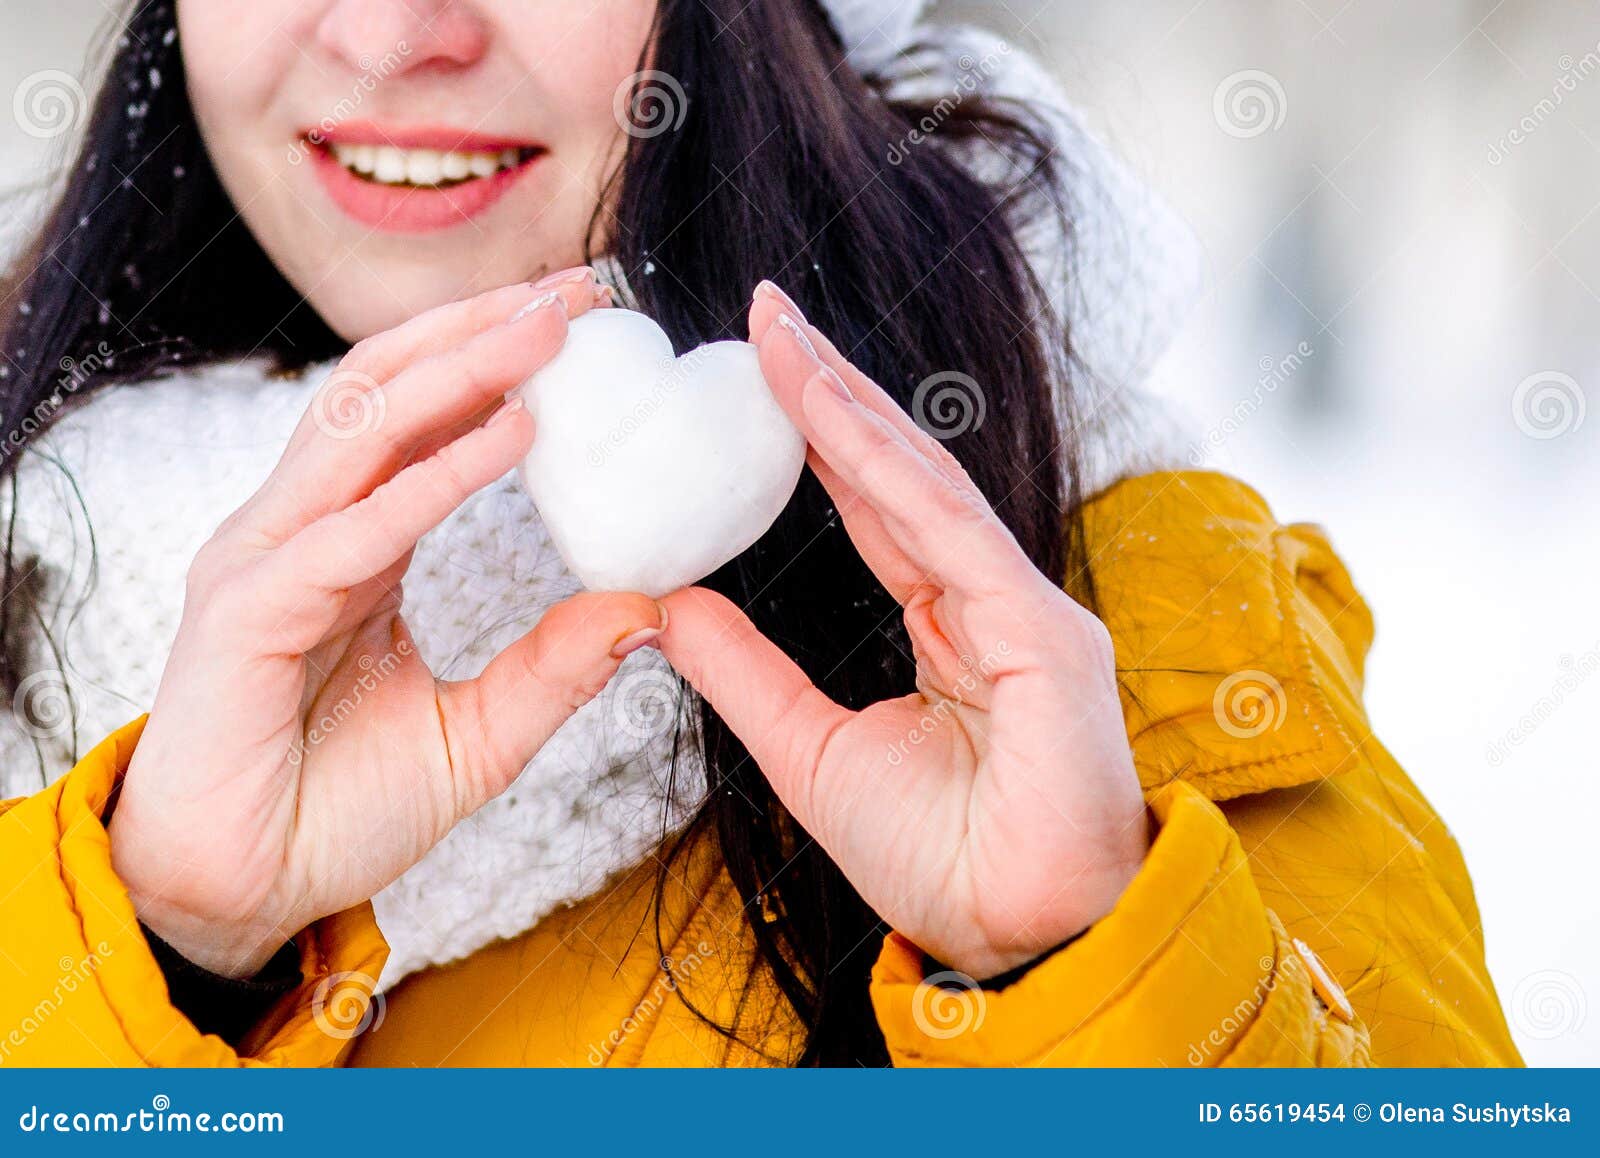 Получи снежок. Девушка со снегом в руках. Девочка со снегом в руках. Снег в руках. Девочка зимой в руке.